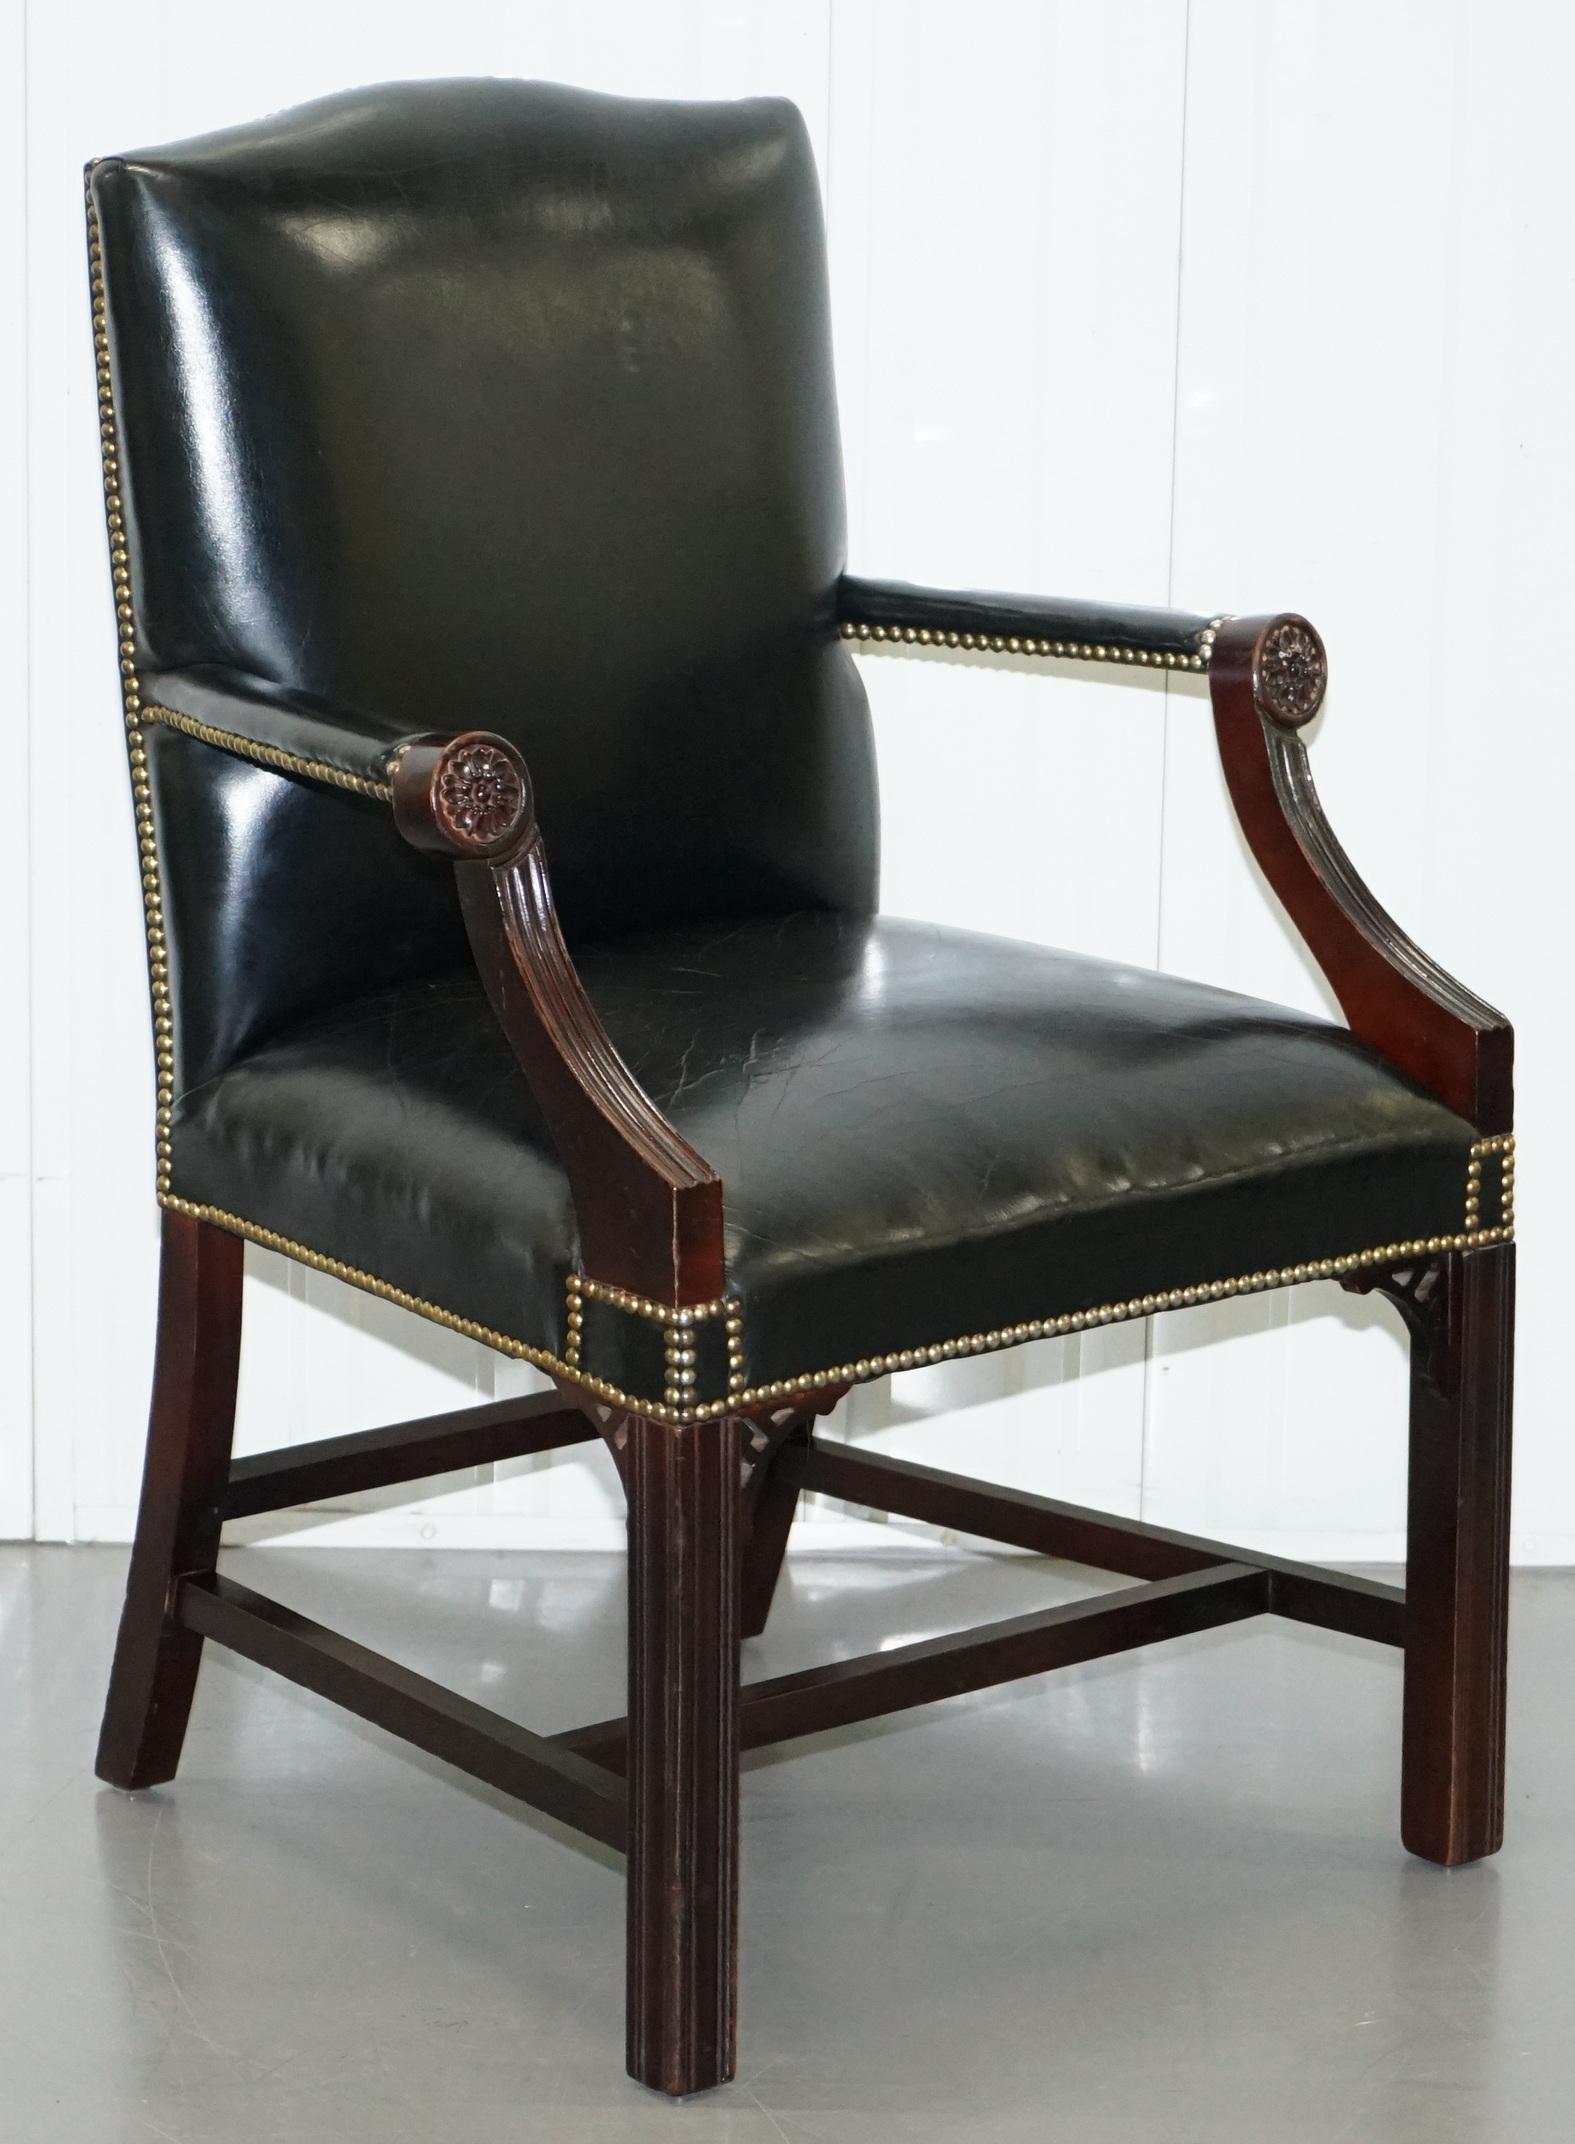 Nous sommes ravis d'offrir à la vente ce superbe fauteuil Gainsborough en cuir noir chromé avec des sculptures de style Thomas Chippendale.

Il y a beaucoup de sculpteurs de type Gainsborough dans le monde et ils peuvent tous sembler bien peu de